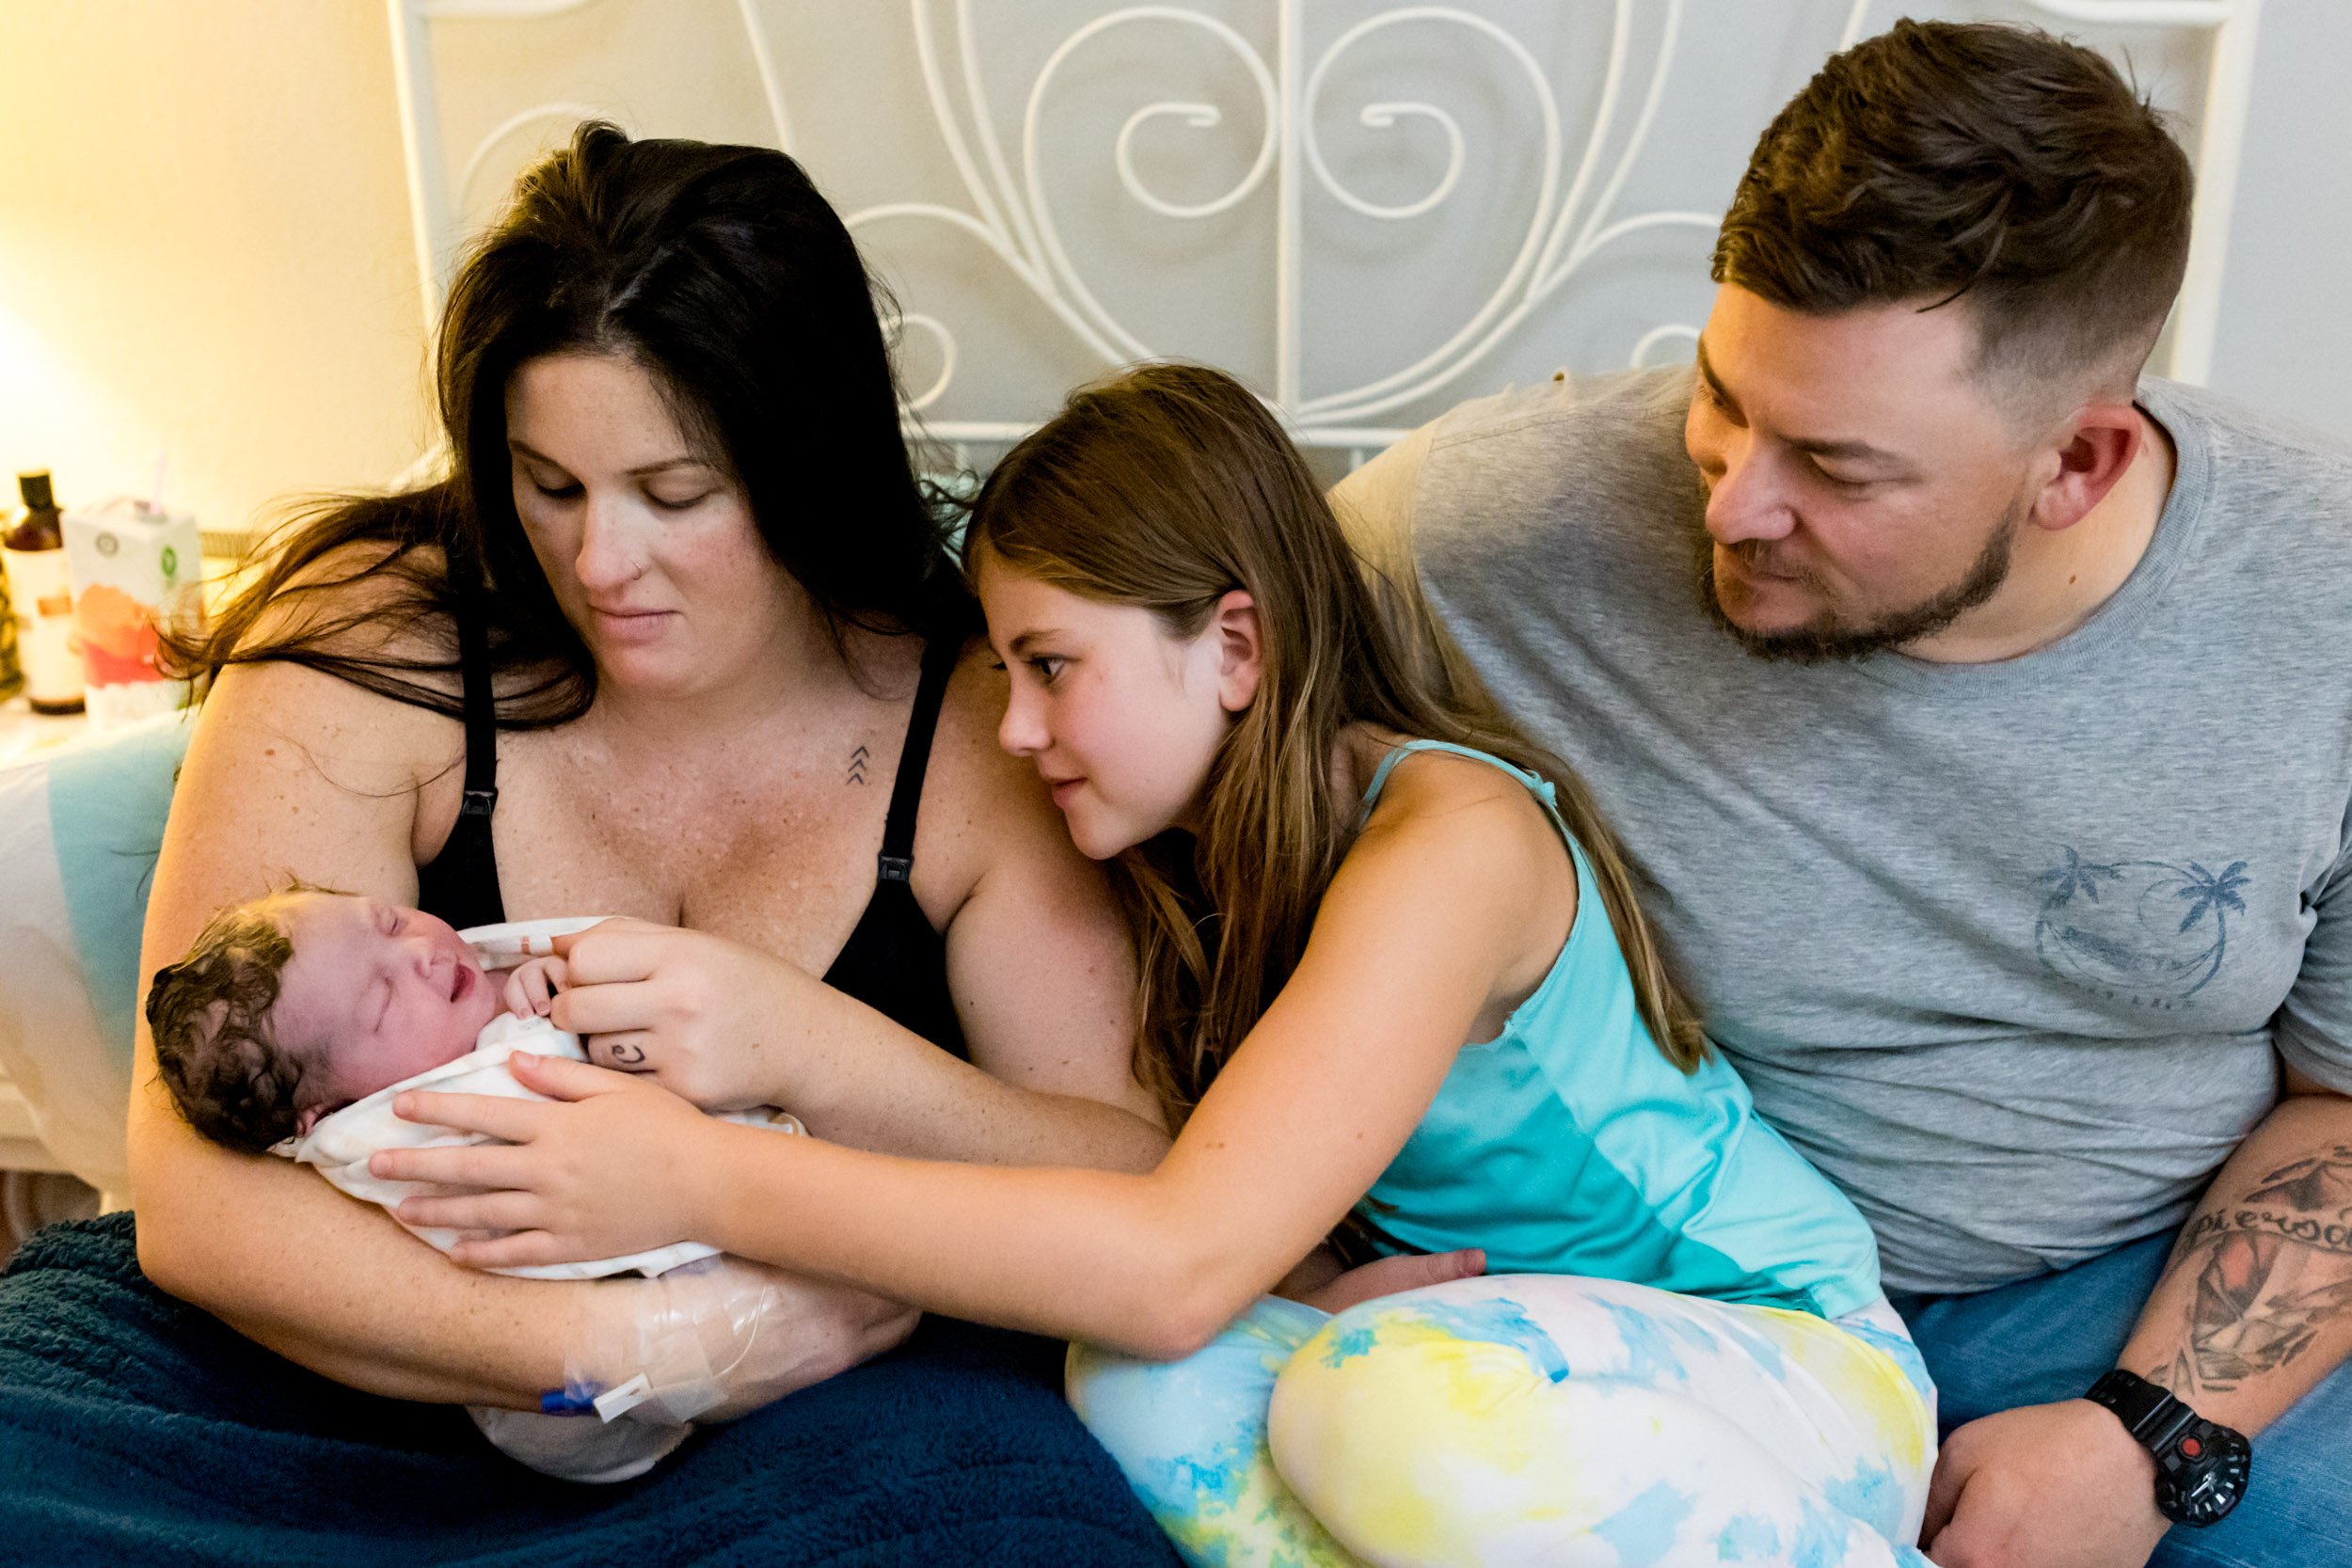 jacksonville family admiring newborn baby girl